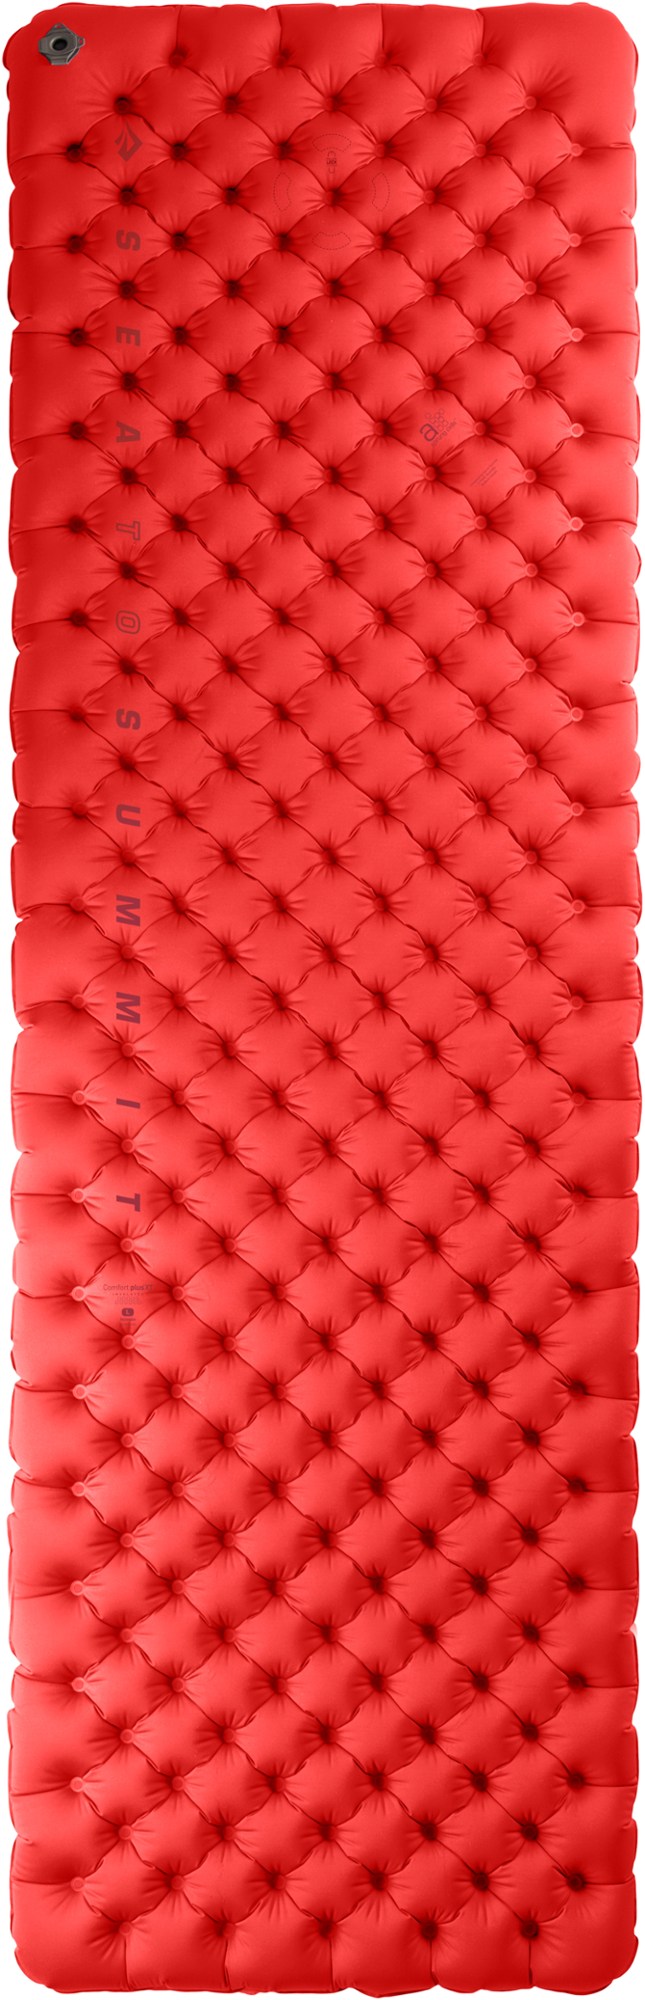 Изолированный воздушный спальный коврик Comfort Plus XT Sea to Summit, красный